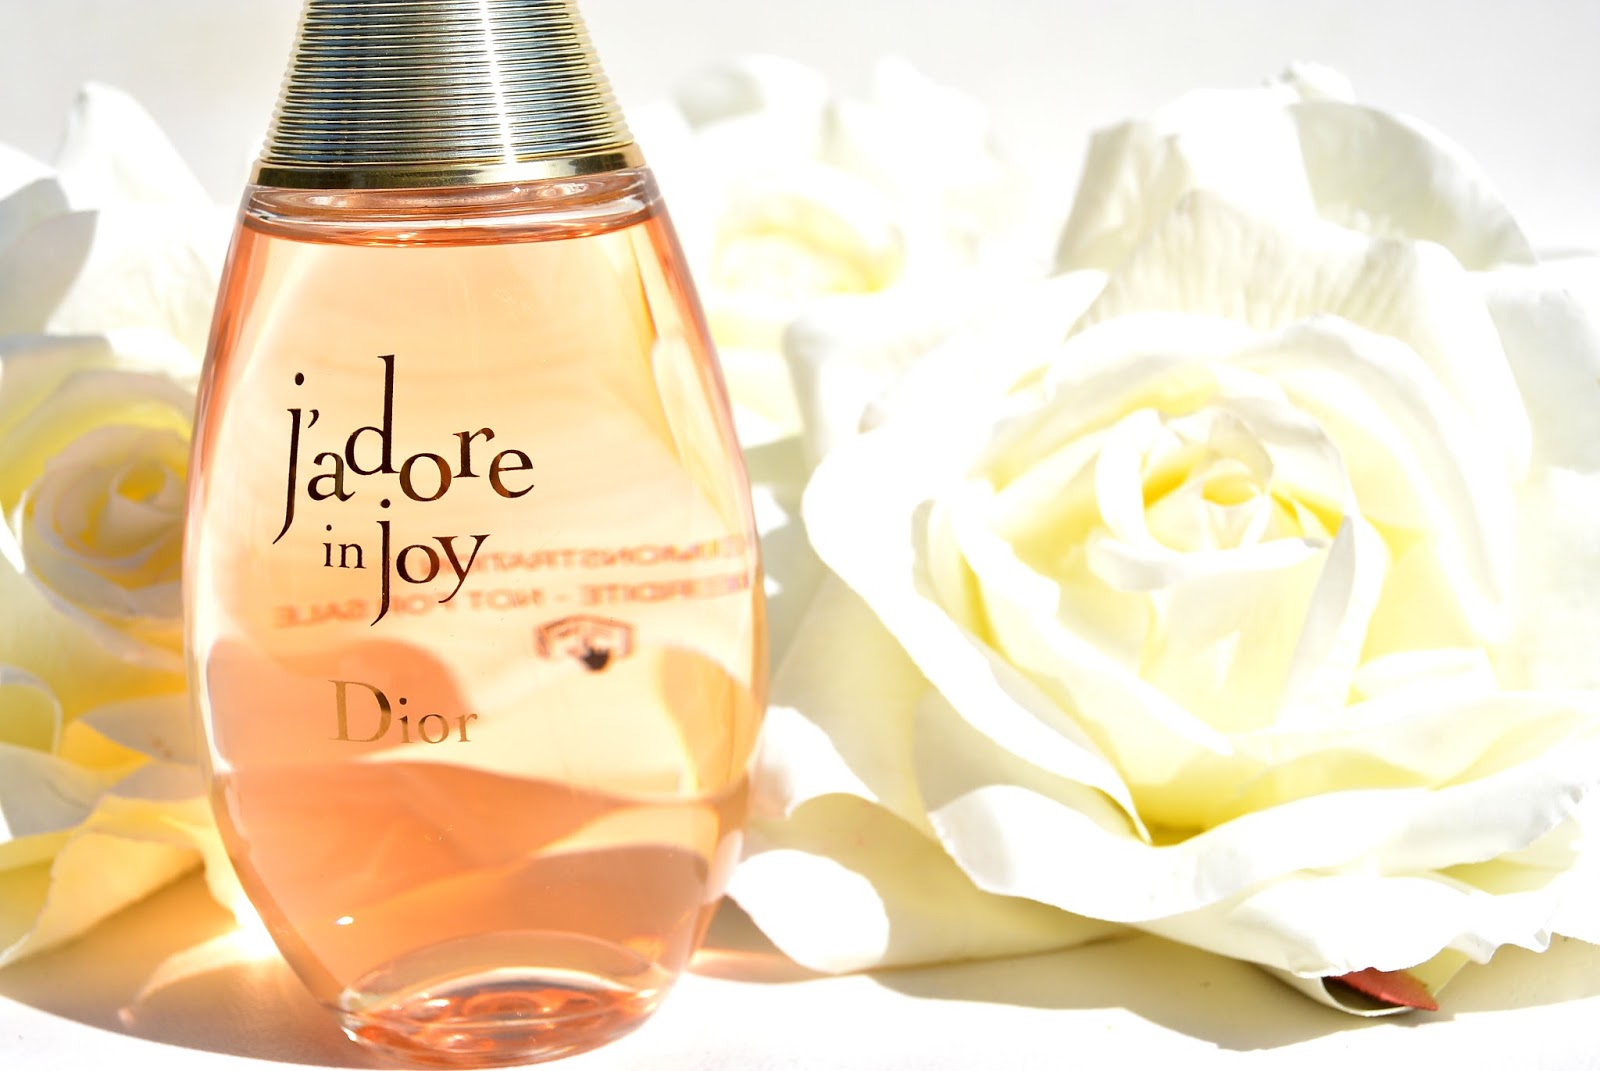 Dior Jadore In Joy EDT น้ำหอมสำหรับคุณผู้หญิงที่ต้องการเผยเสน่ห์ในสไตล์ของตัวเอง ด้วยกลิ่นของความสุขสันต์ที่ให้ความหอมหวานอ่อนละมุนเจือด้วยกลิ่นไอของทะเลอันเป็นเอกลักษณ์ เพิ่มเสน่ห์อันน่าดึงดูดจากกลิ่นดอกไม้อย่างดอกมะลิแซมบัค ดอกซ่อนกลิ่น สารสกัดจากดอกกระดังงา และผลไม้จากส้มเนโรลิ